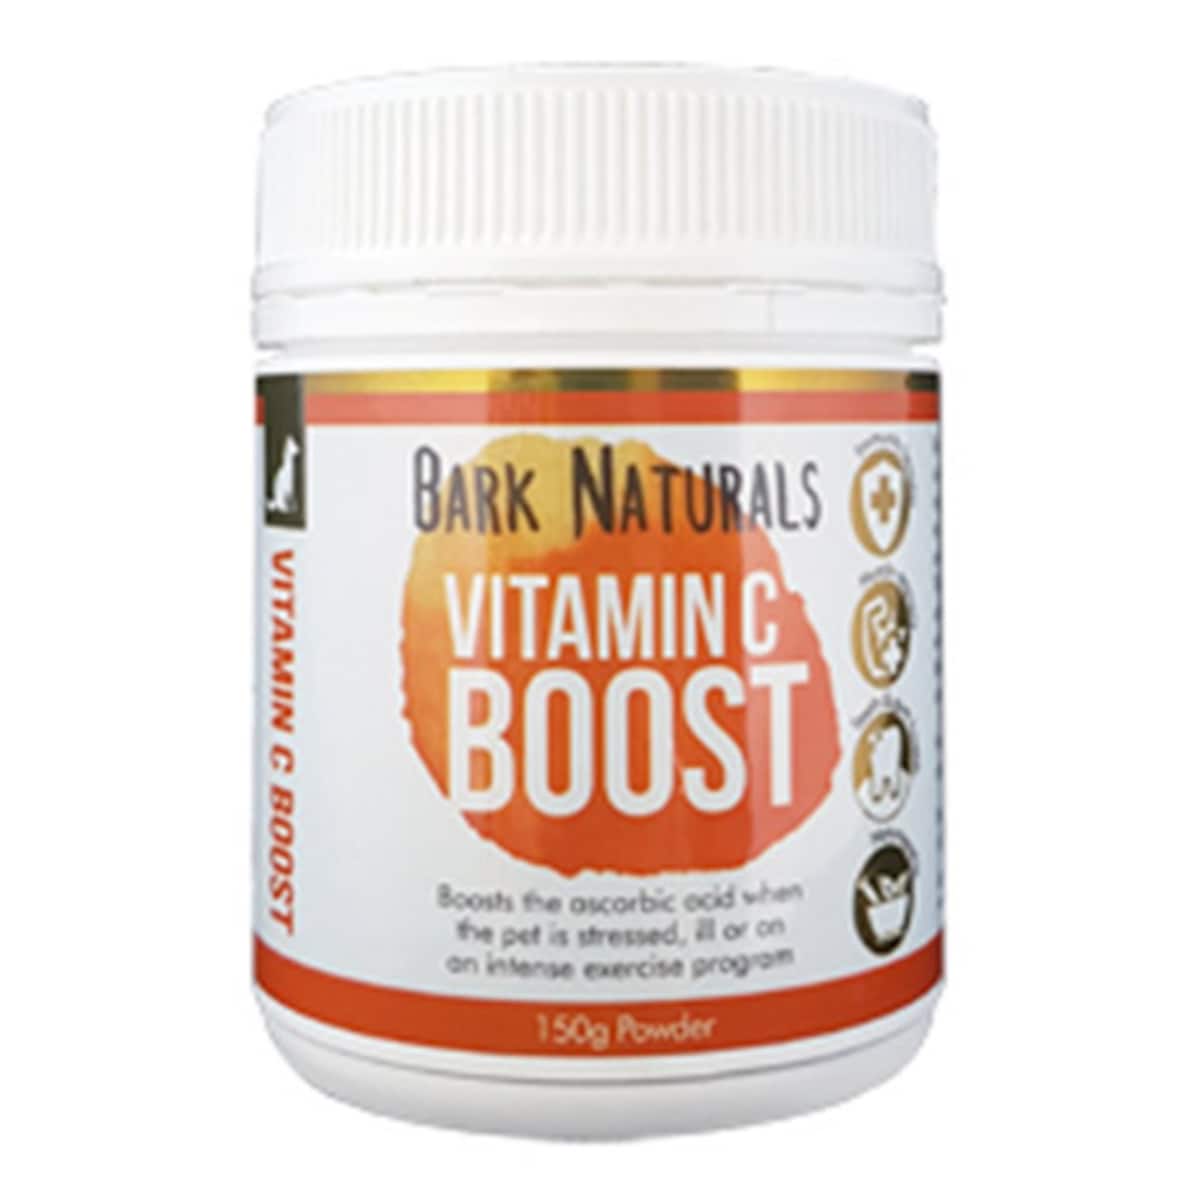 Bark Naturals Vitamin C Boost 150G